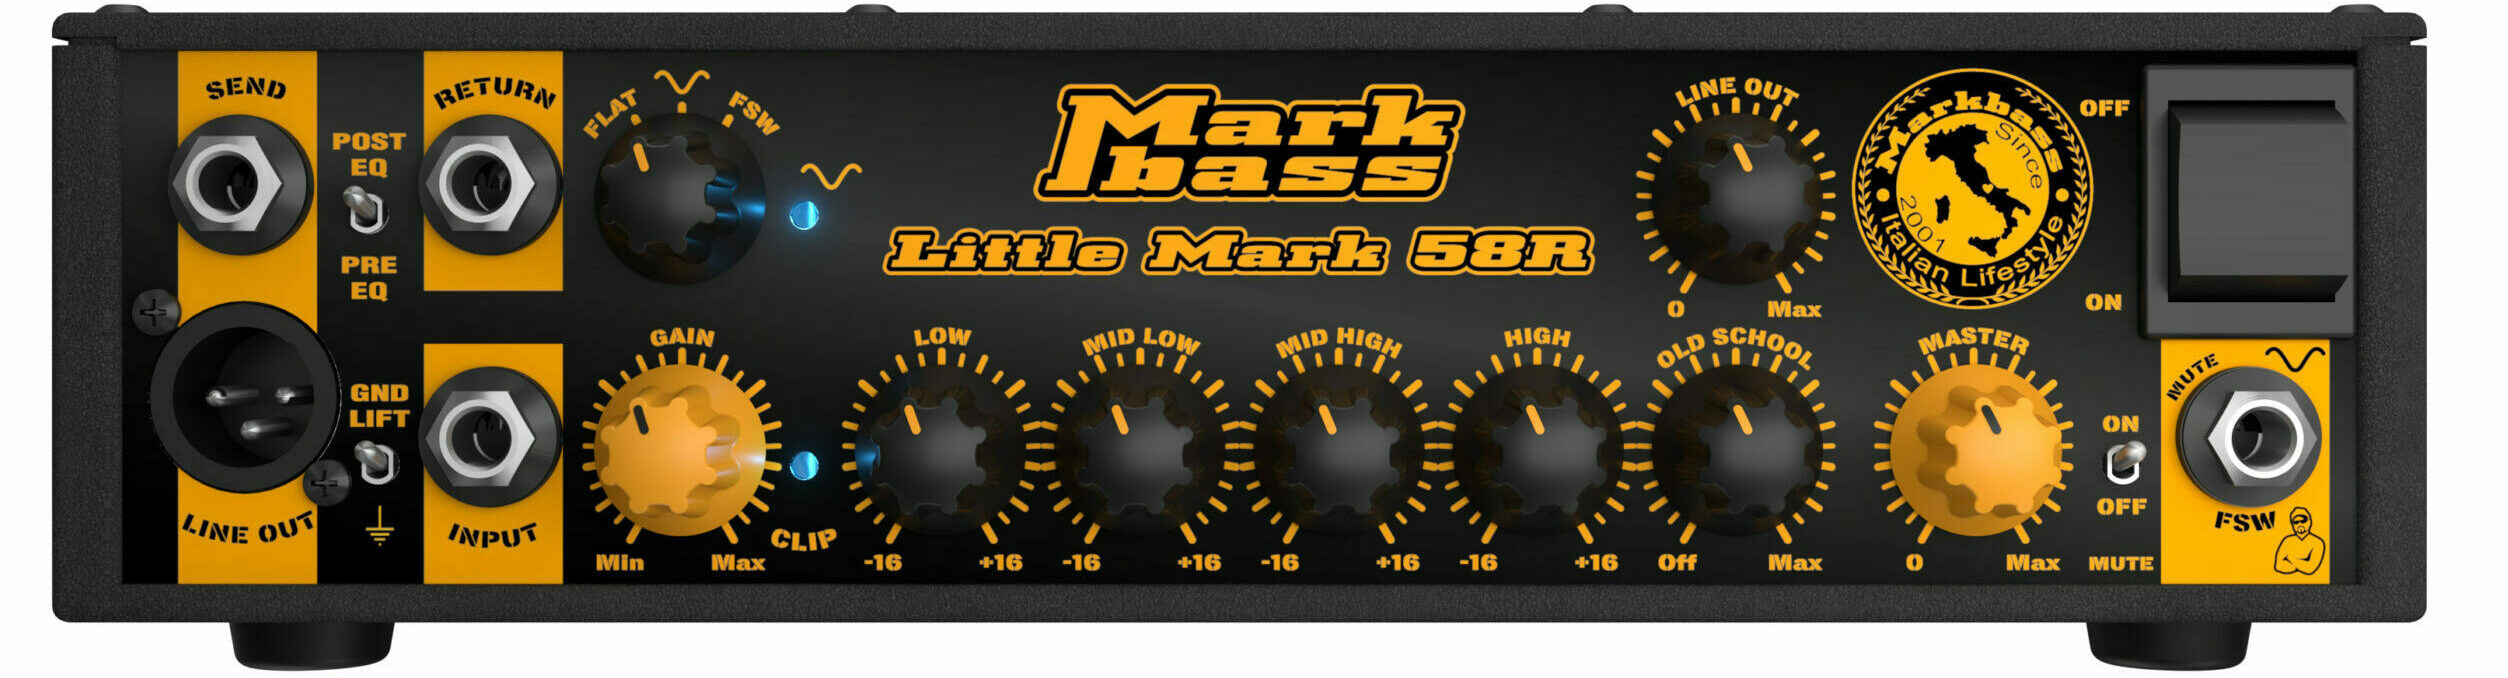 Markbass Little Mark 58r Head 500w - Bass amp head - Variation 1